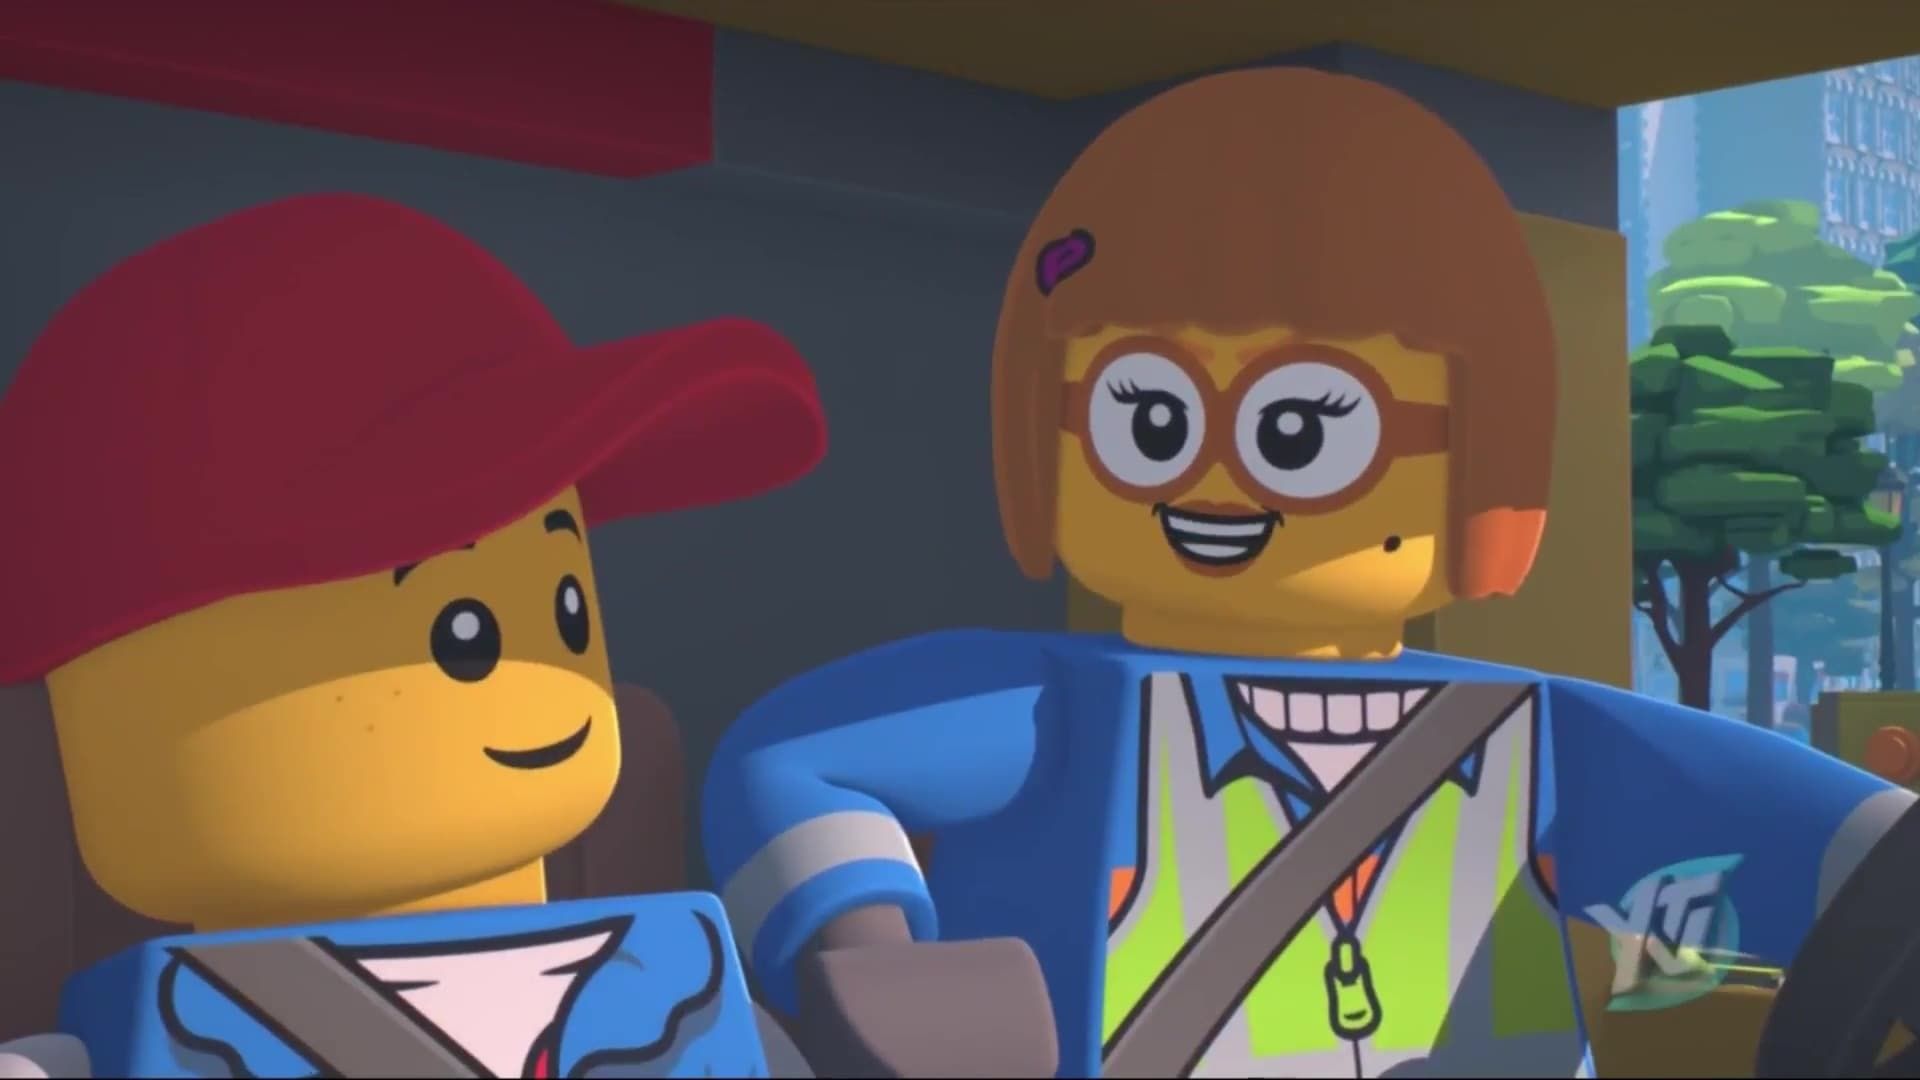 Lego City Adventures background